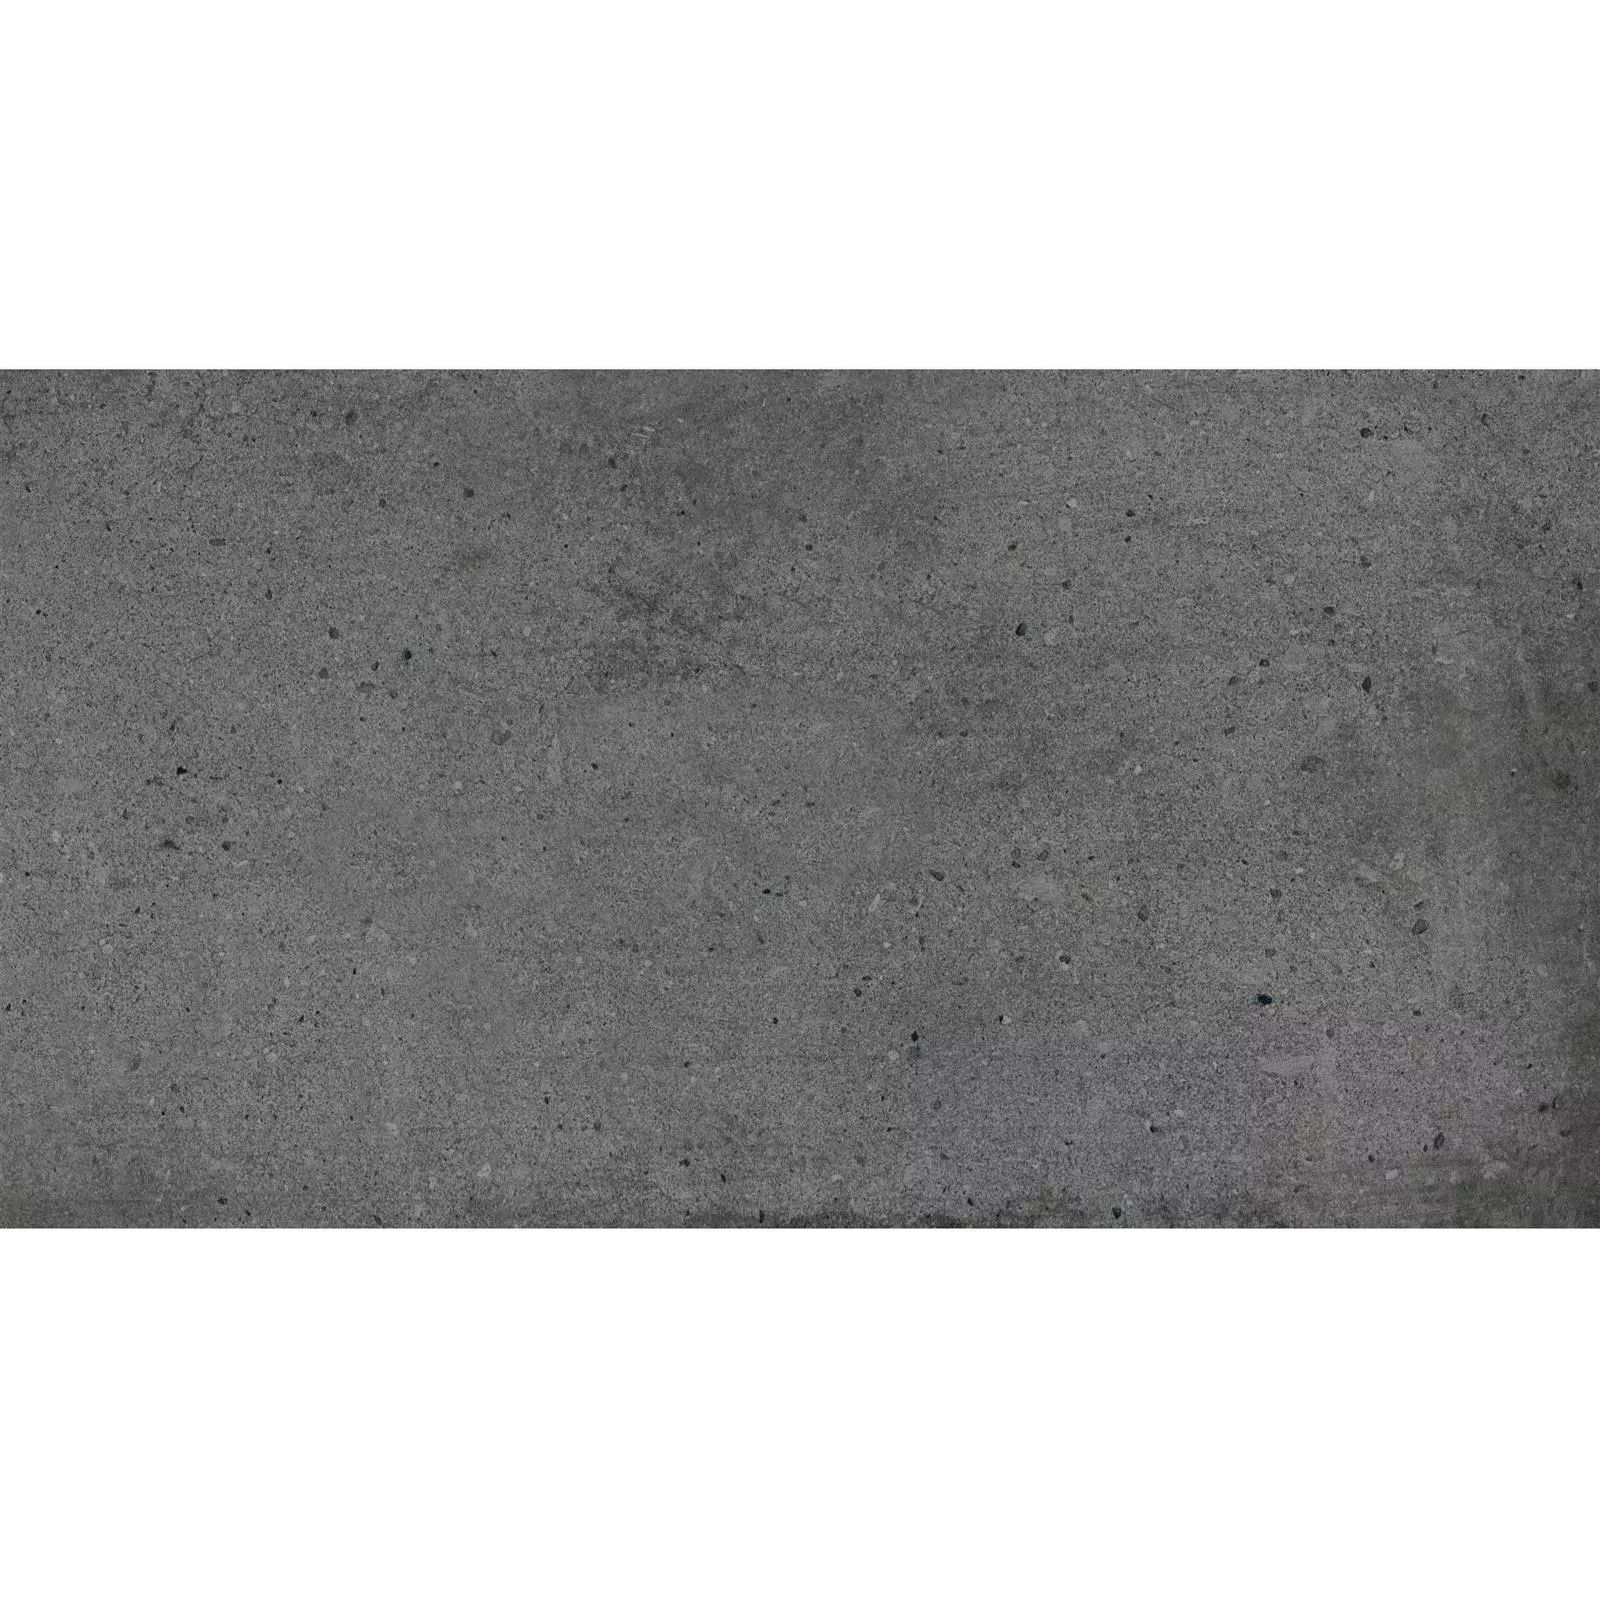 Pavimentos Freeland Aspecto de Piedra R10/B Antracita 30x60cm